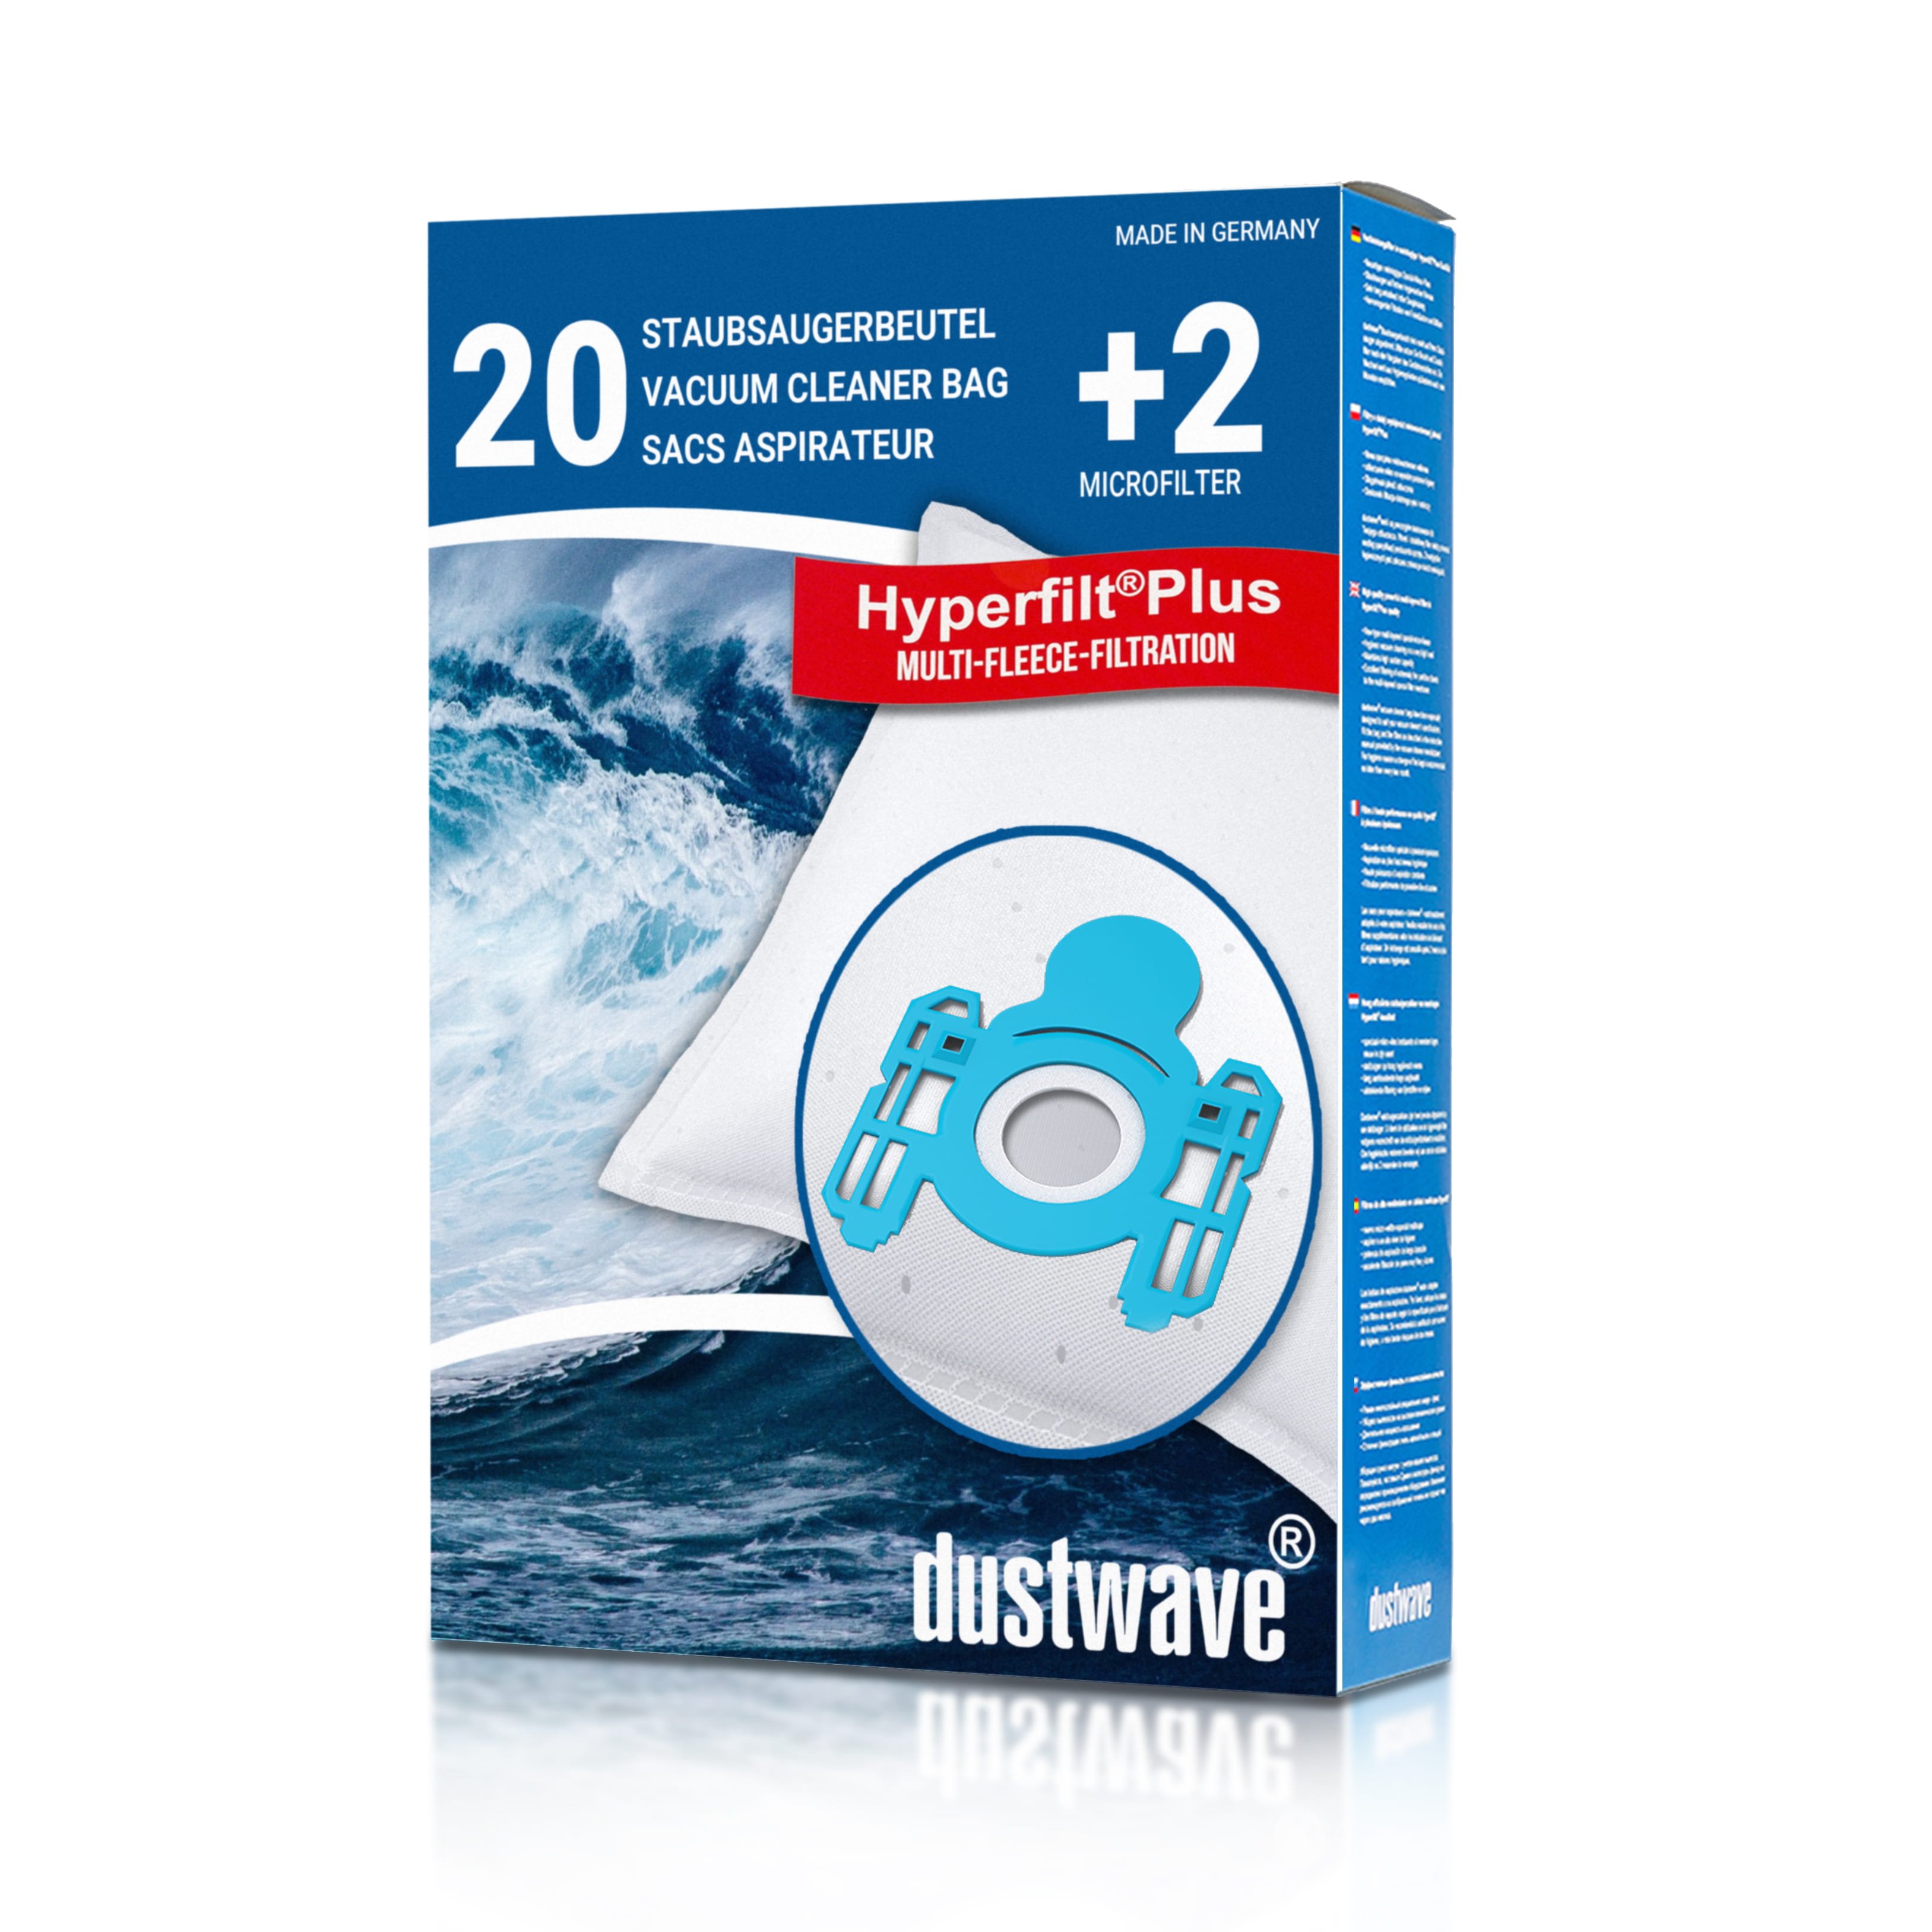 Dustwave® 20 Staubsaugerbeutel für AEG Vampyr CE K 4200 - hocheffizient, mehrlagiges Mikrovlies mit Hygieneverschluss - Made in Germany